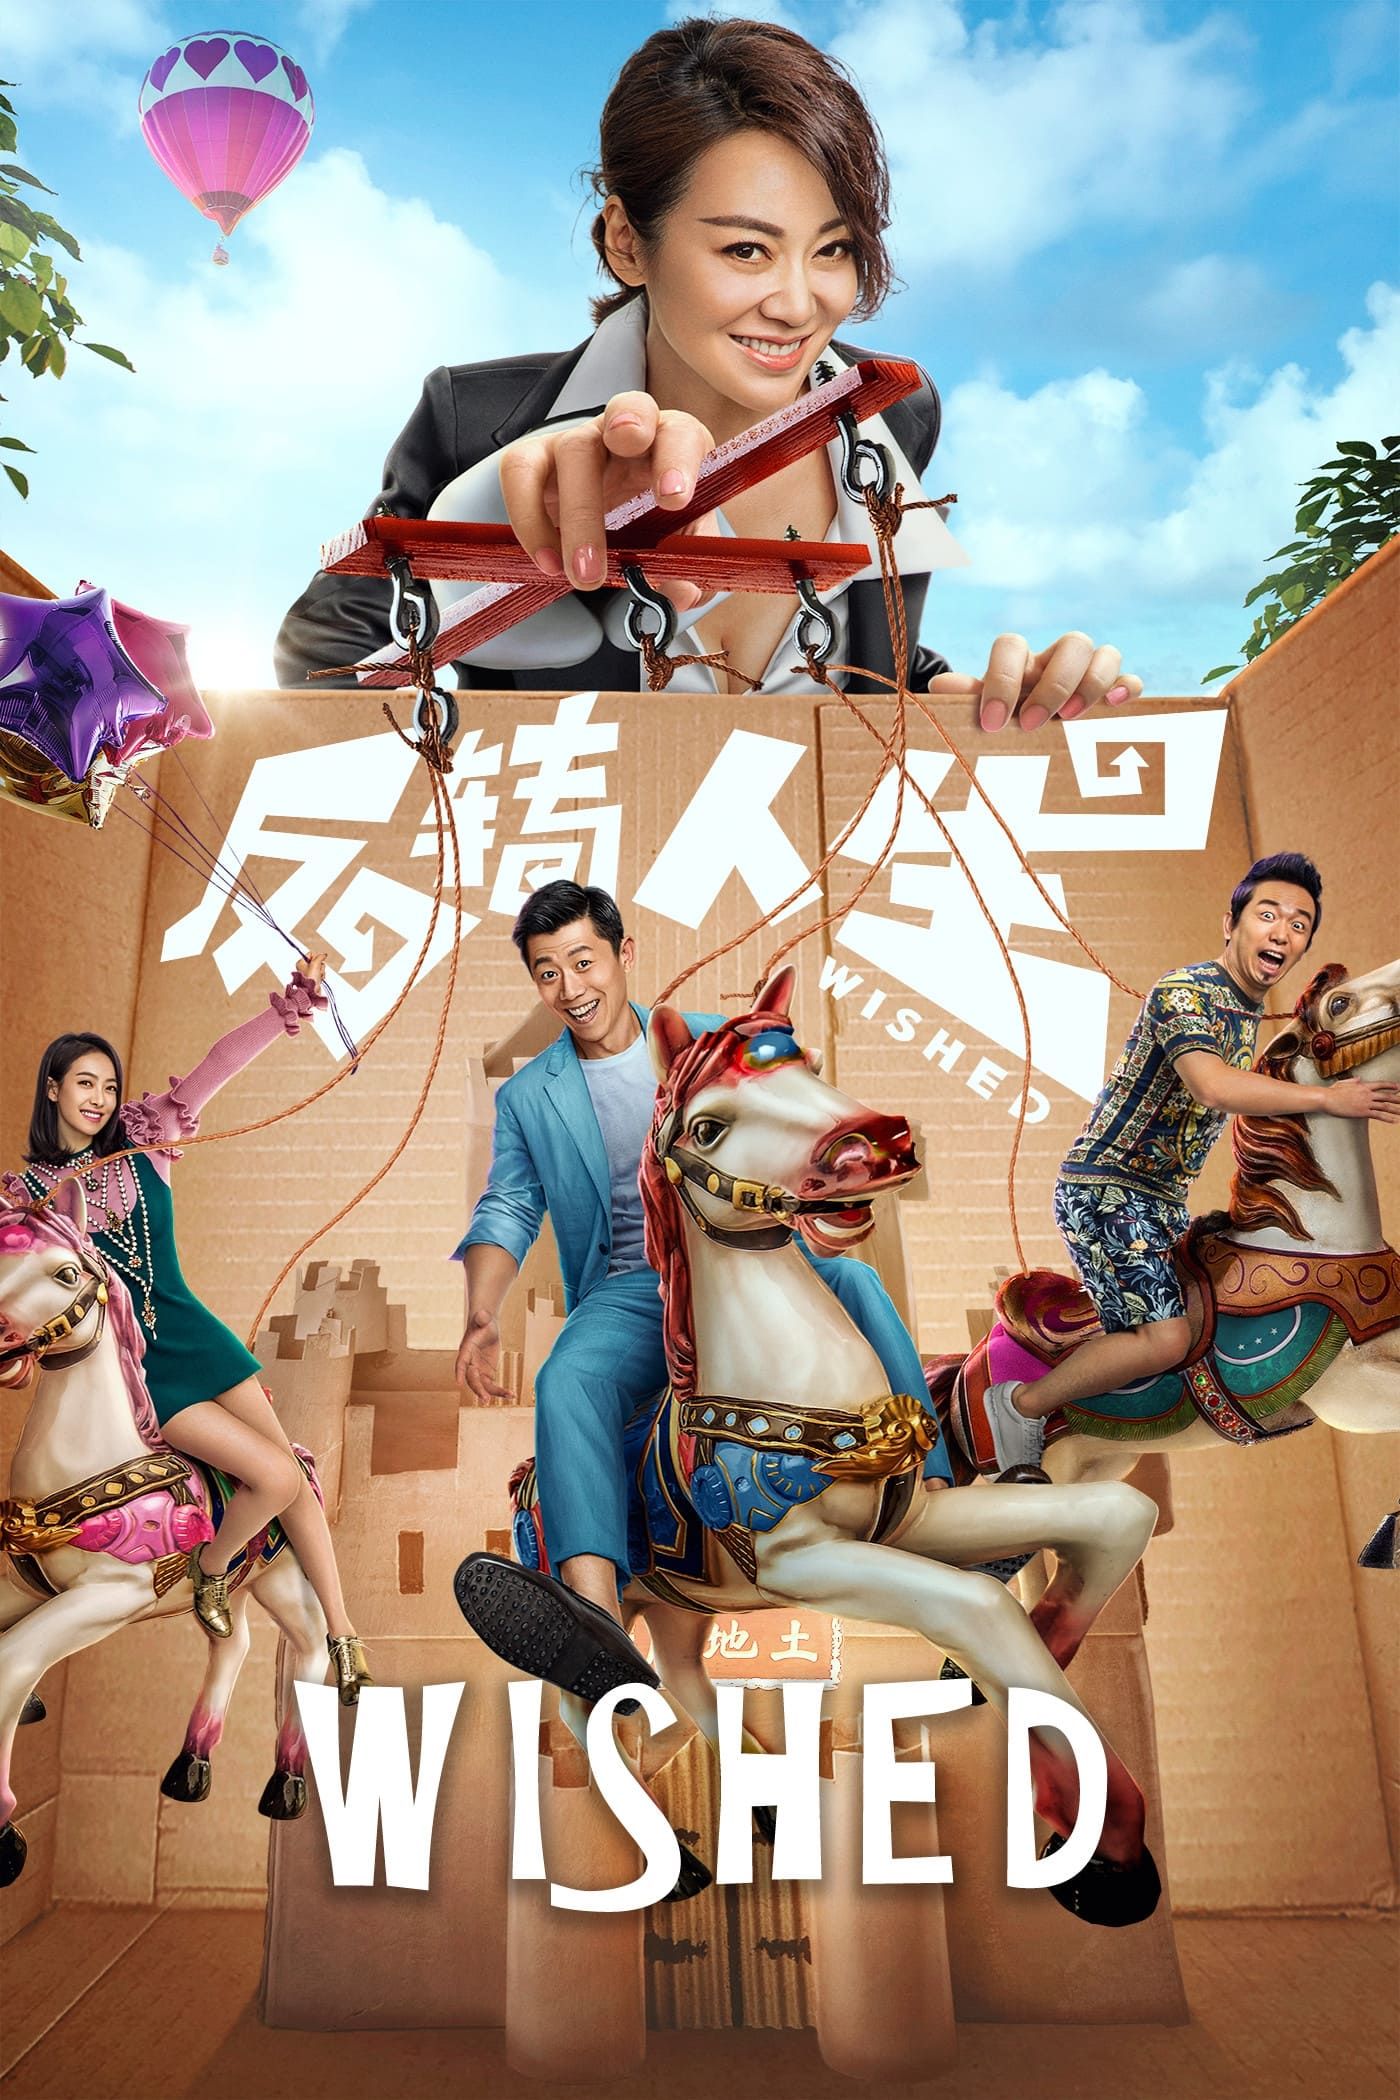 YESASIA: Double Trouble (2012) (DVD) (Hong Kong Version) DVD - Jaycee Chan,  Deng Jia Jia, Panorama (HK) - Taiwan Movies & Videos - Free Shipping